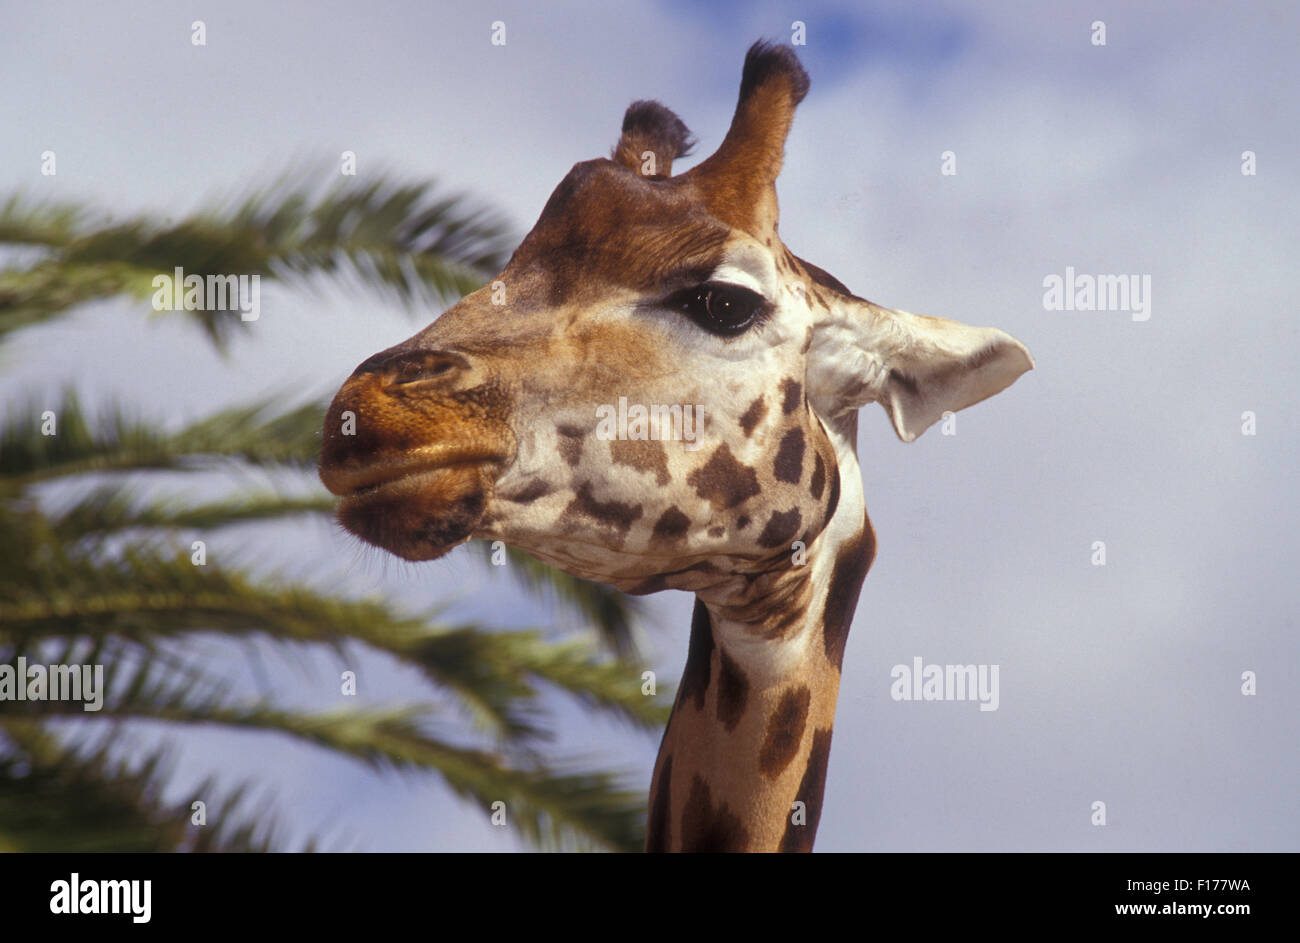 Head shot of a giraffe, Taronga Park Zoo, Sydney, NSW, Australia Stock Photo